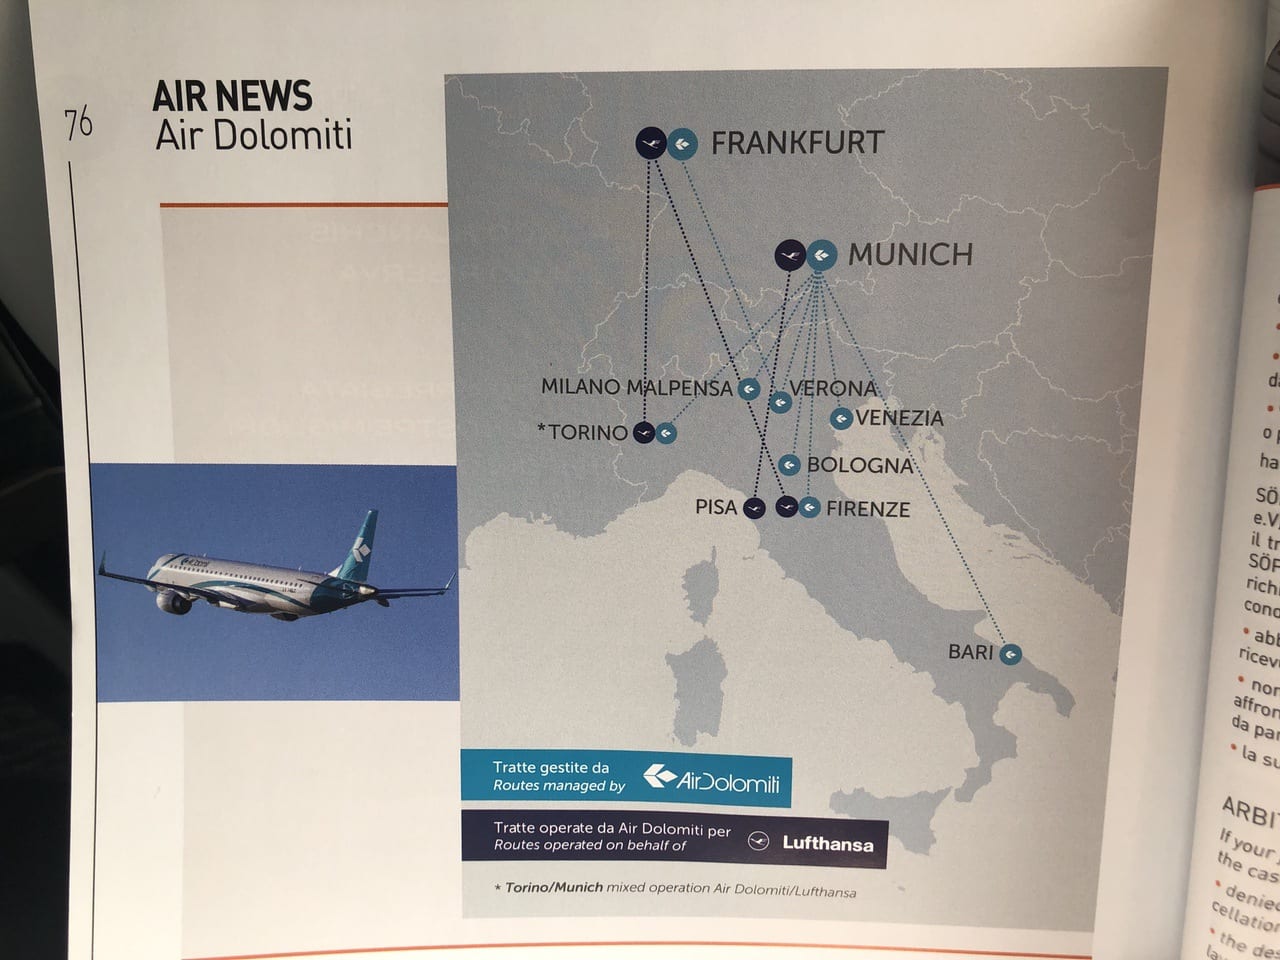 焦る ニースからミュンヘン行きがイタリア航空会社 エアードロミティ 一瞬イタリアに行くのかと焦る エキスプロラター ダジュール